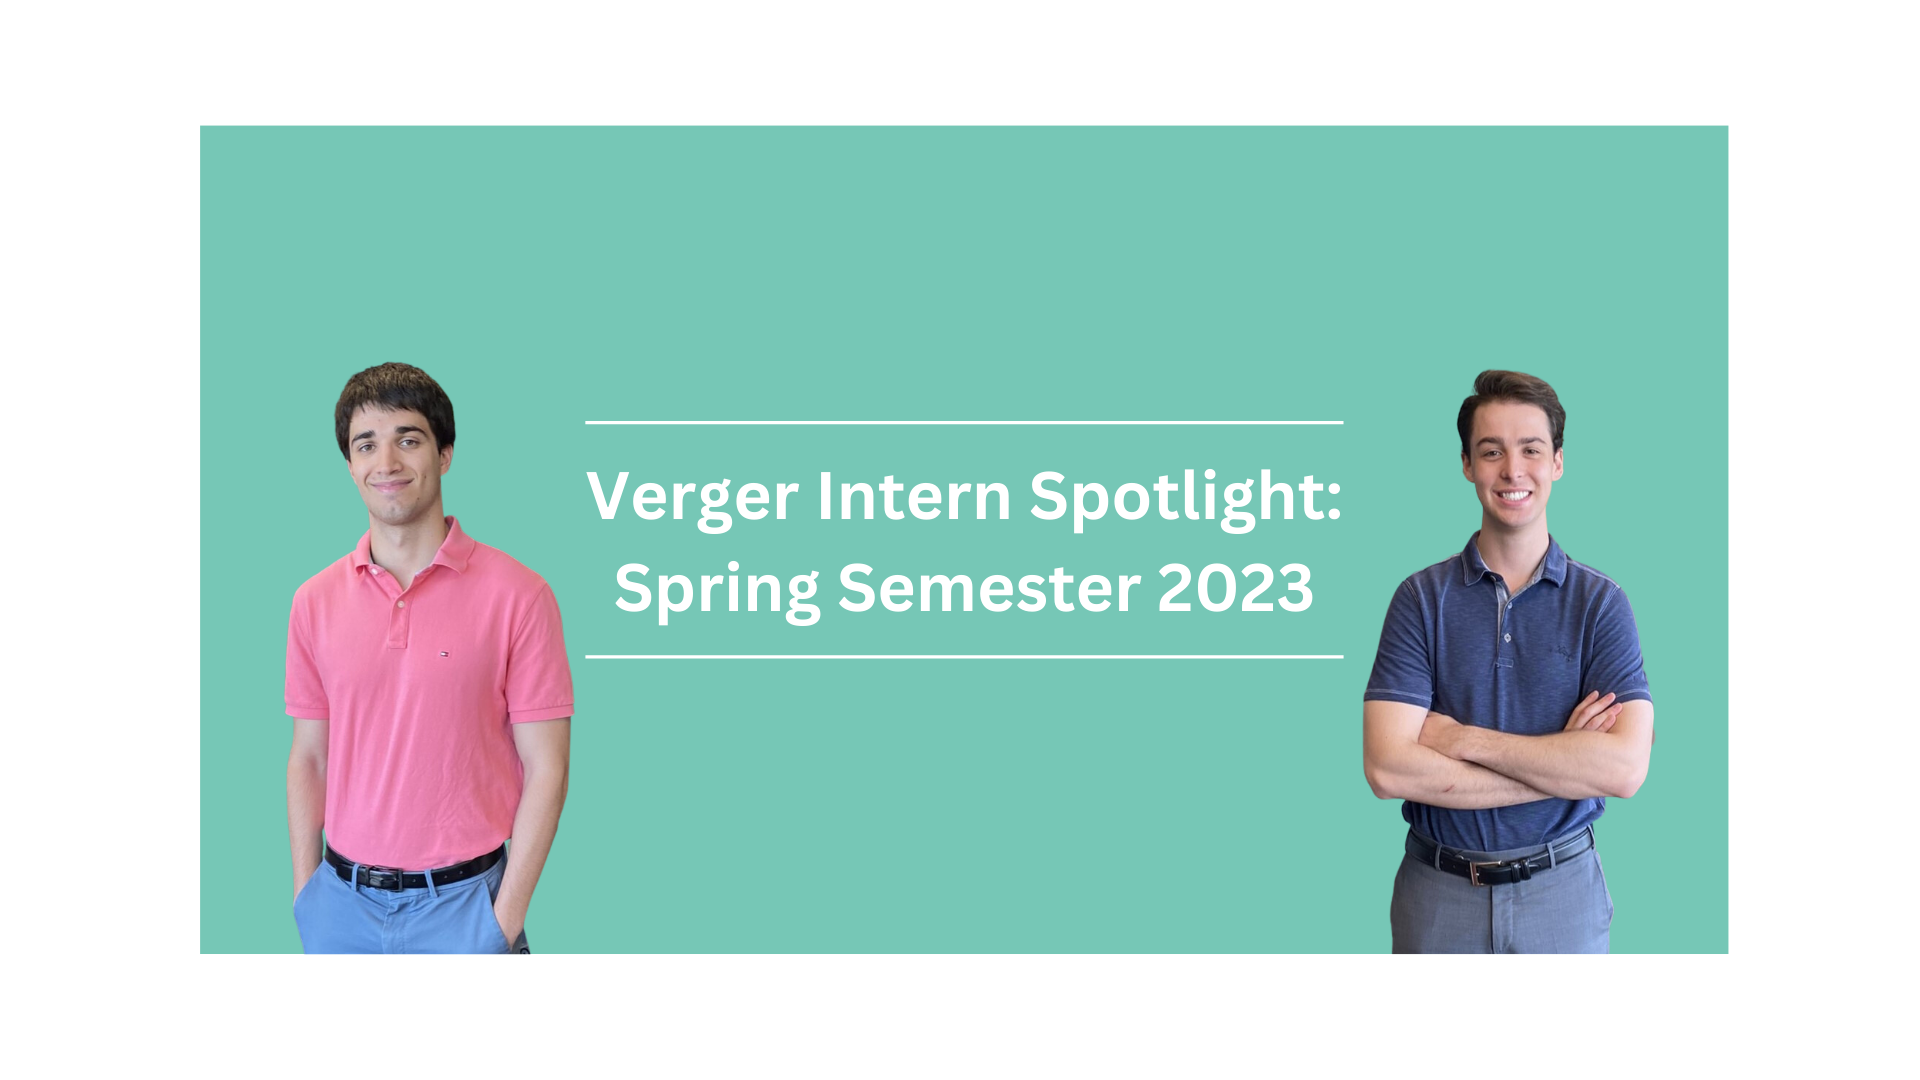 Verger Intern Spotlight: Spring Semester 2023